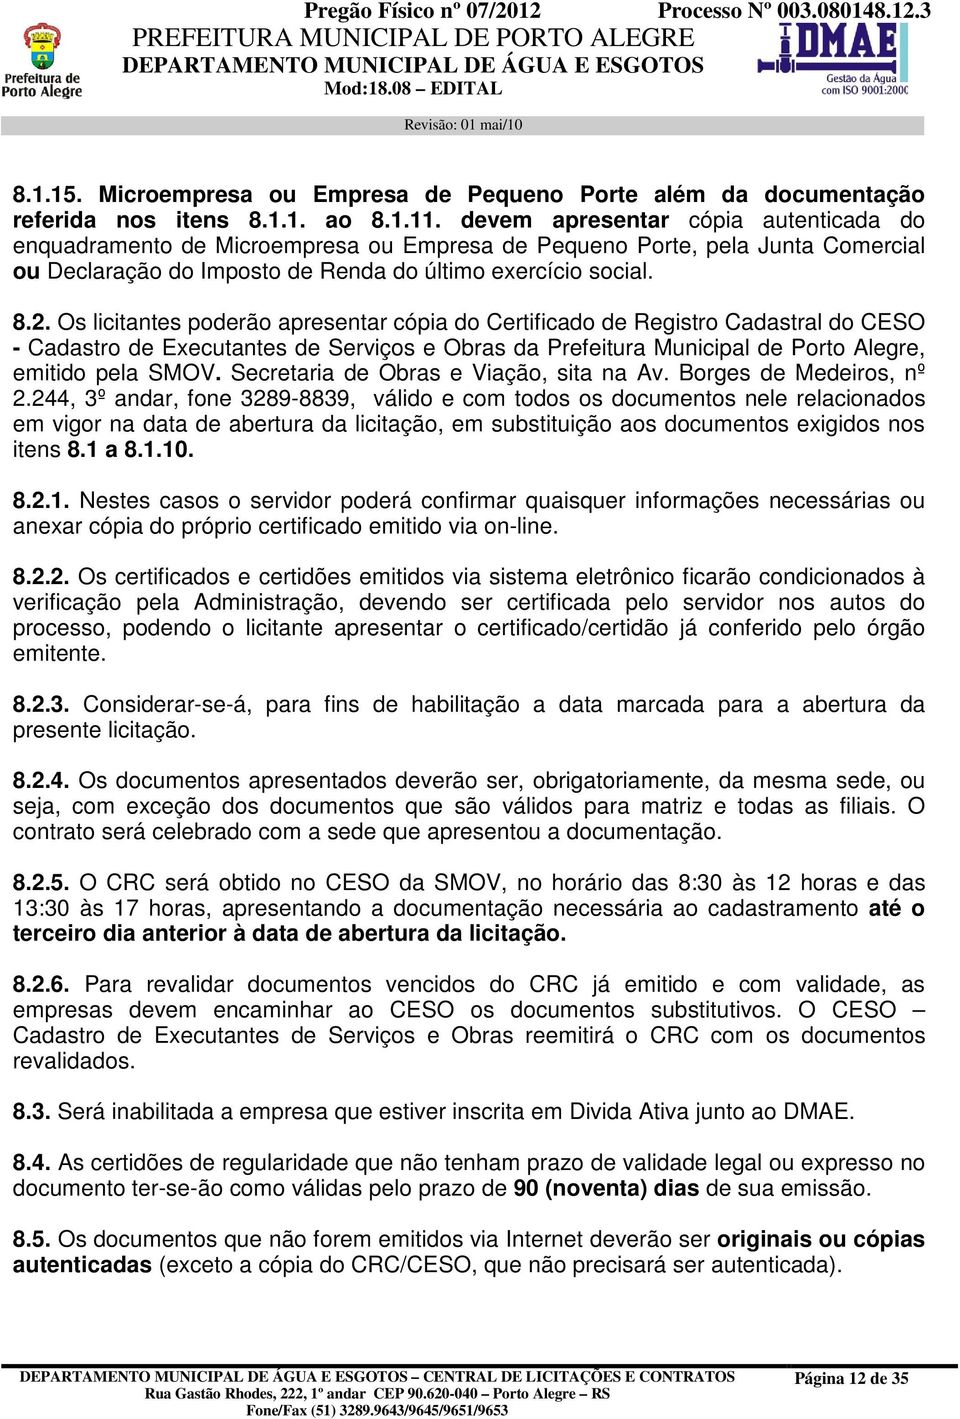 Os licitantes poderão apresentar cópia do Certificado de Registro Cadastral do CESO - Cadastro de Executantes de Serviços e Obras da Prefeitura Municipal de Porto Alegre, emitido pela SMOV.